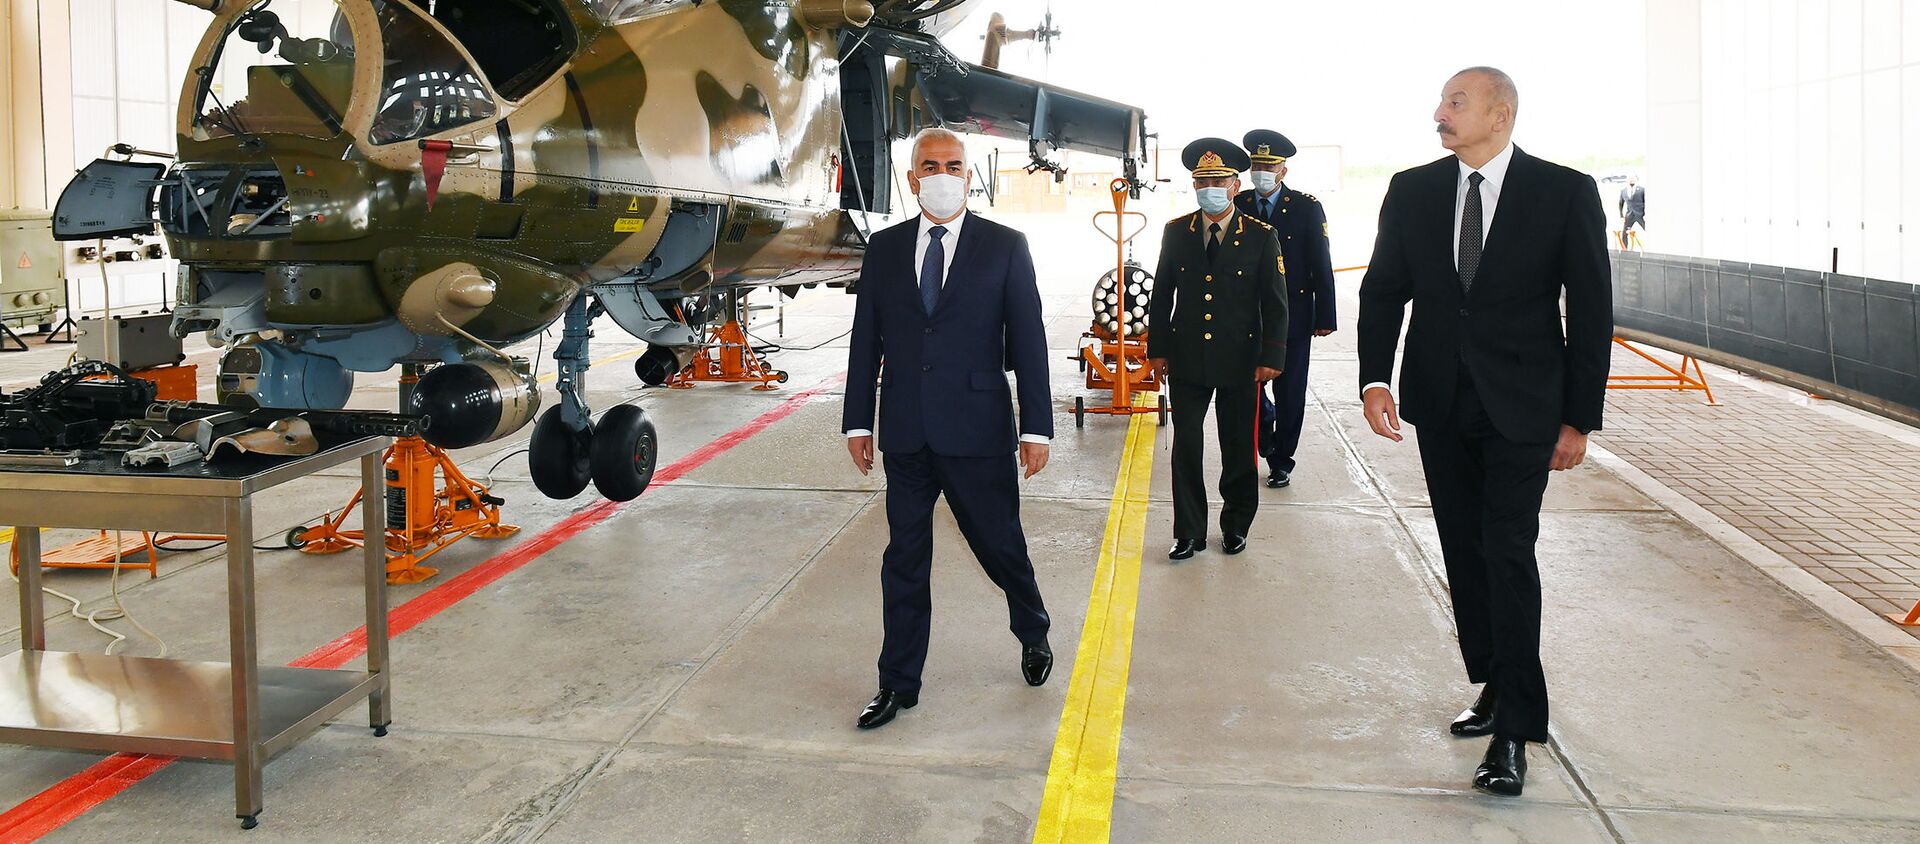 Prezident İlham Əliyev Əlahiddə Ümumqoşun Ordunun hərbi aerodromunun açılışında iştirak edib - Sputnik Azərbaycan, 1920, 10.05.2021